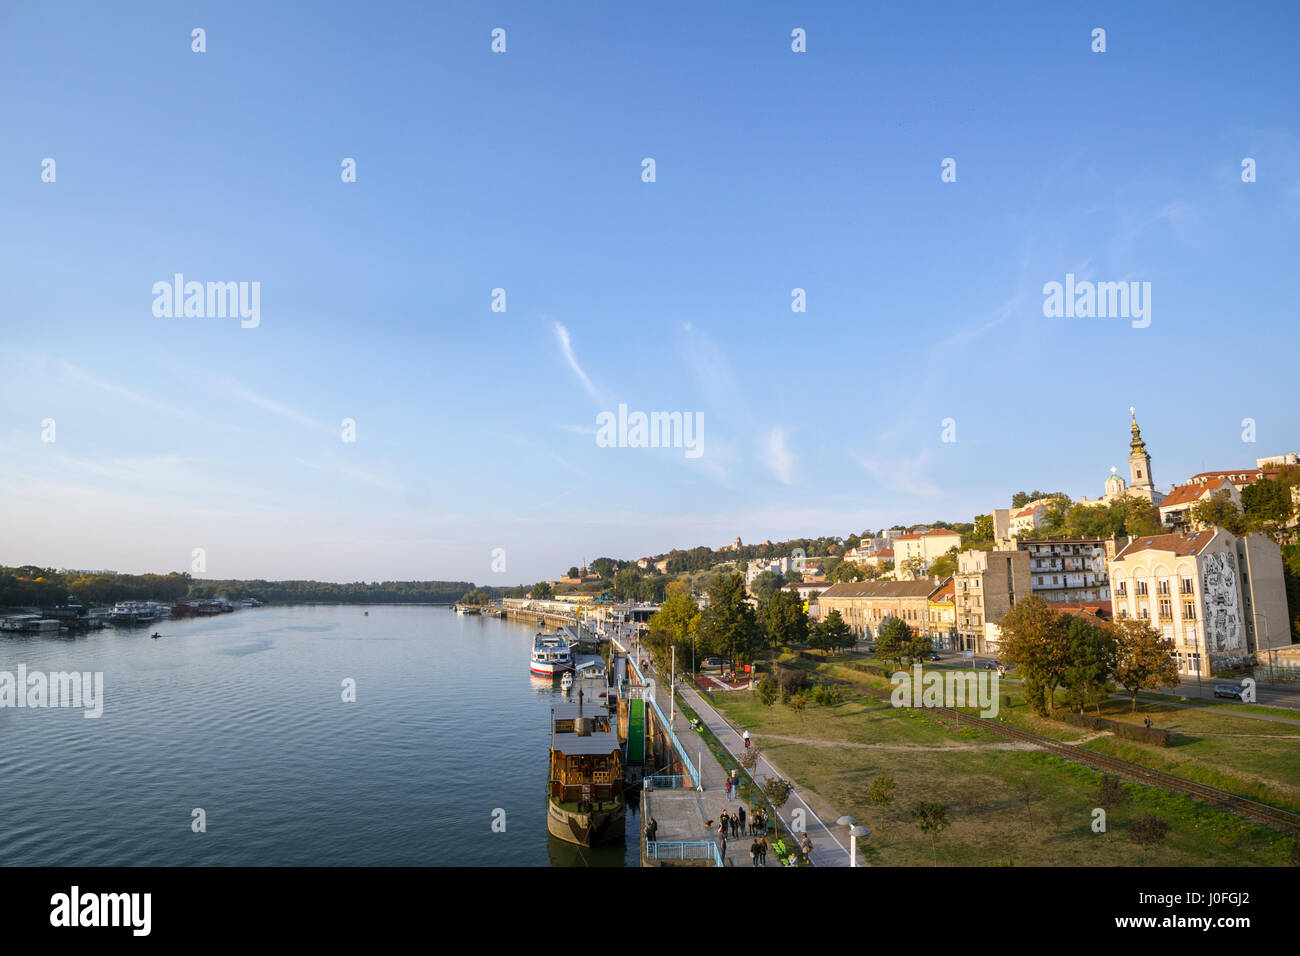 Belgrad, Serbien - 9. Oktober 2016: Ansicht des Sava Flusses Bank in Belgrad. Eine orthodoxe Kathedrale sehen auf der rechten, Kalemegdan-Festung Stockfoto